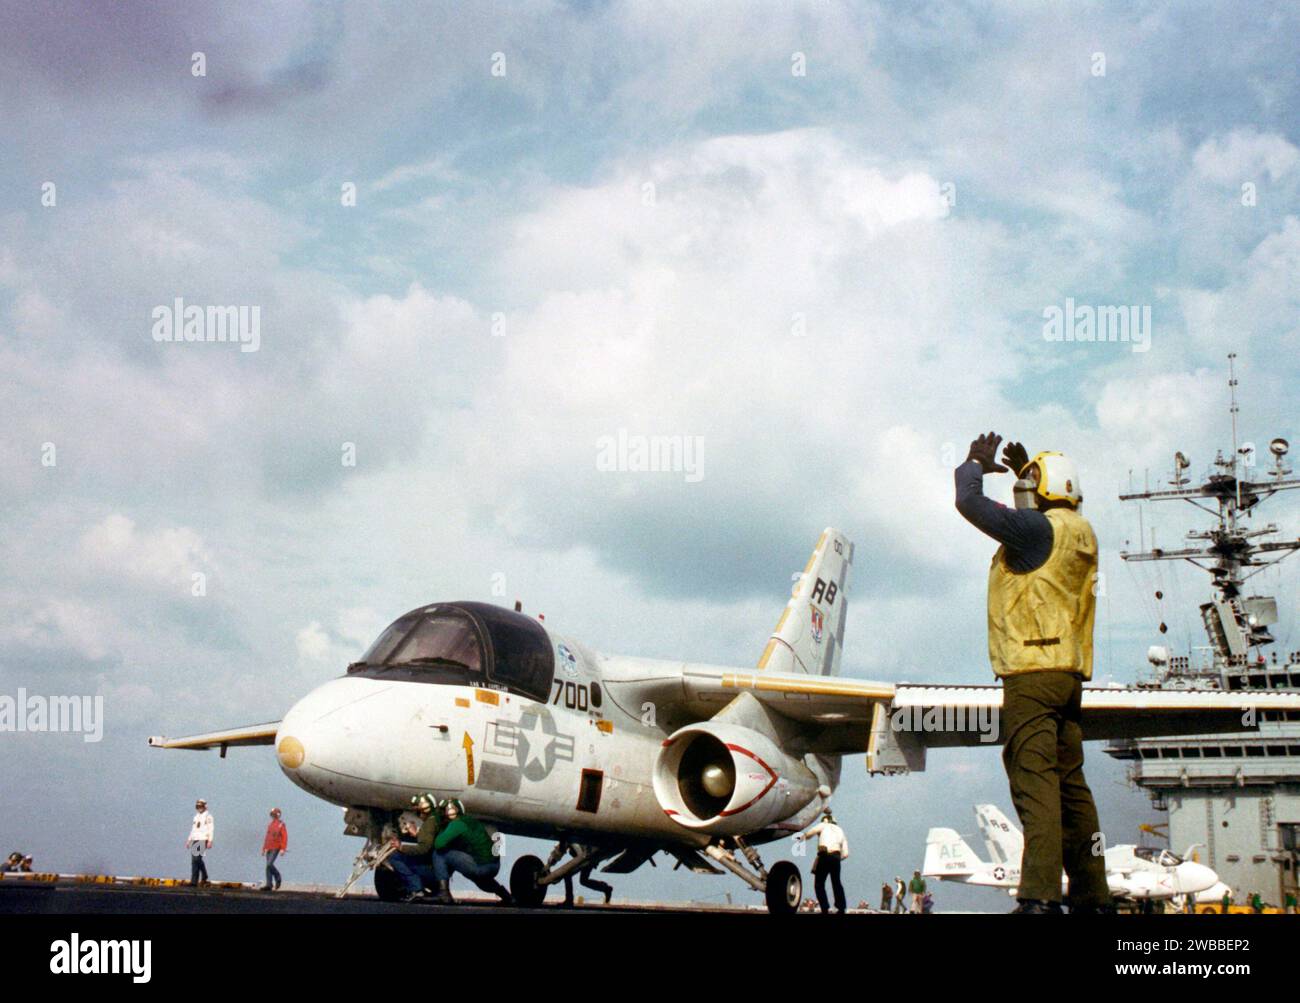 Un directeur d'avion signale des instructions au pilote d'un S-3a Viking alors que l'avion est positionné sur une catapulte pendant les opérations de vol à bord du porte-avions nucléaire USS THEODORE ROOSEVELT (CVN-71) 1987 Banque D'Images